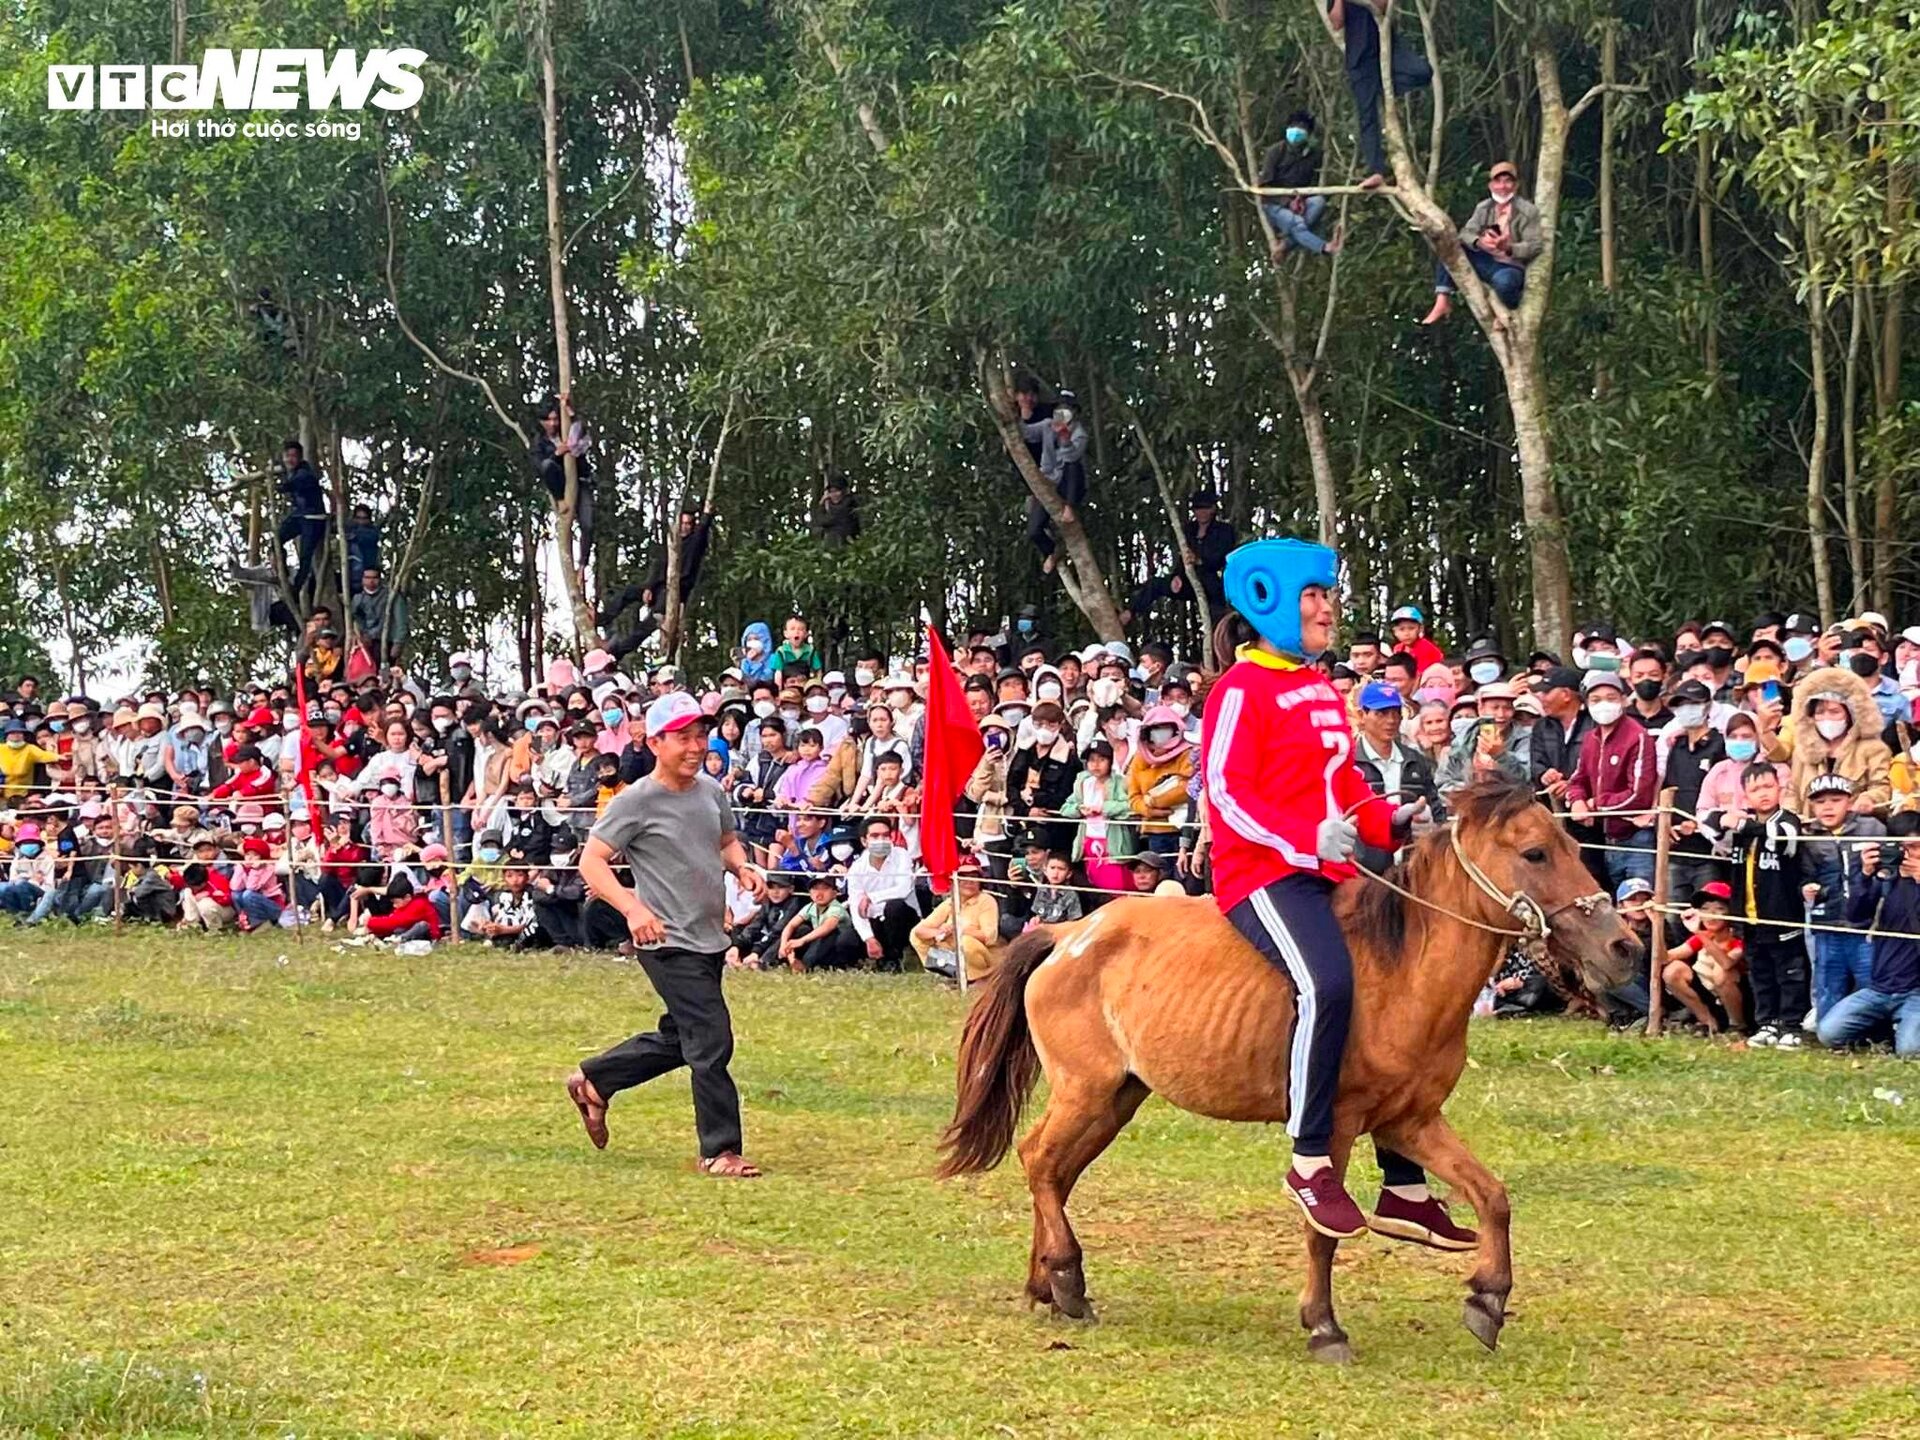 Xem nữ &quot;kỵ sĩ nông dân&quot; tranh tài tại lễ hội đua ngựa độc nhất vô nhị Phú Yên - Ảnh 7.